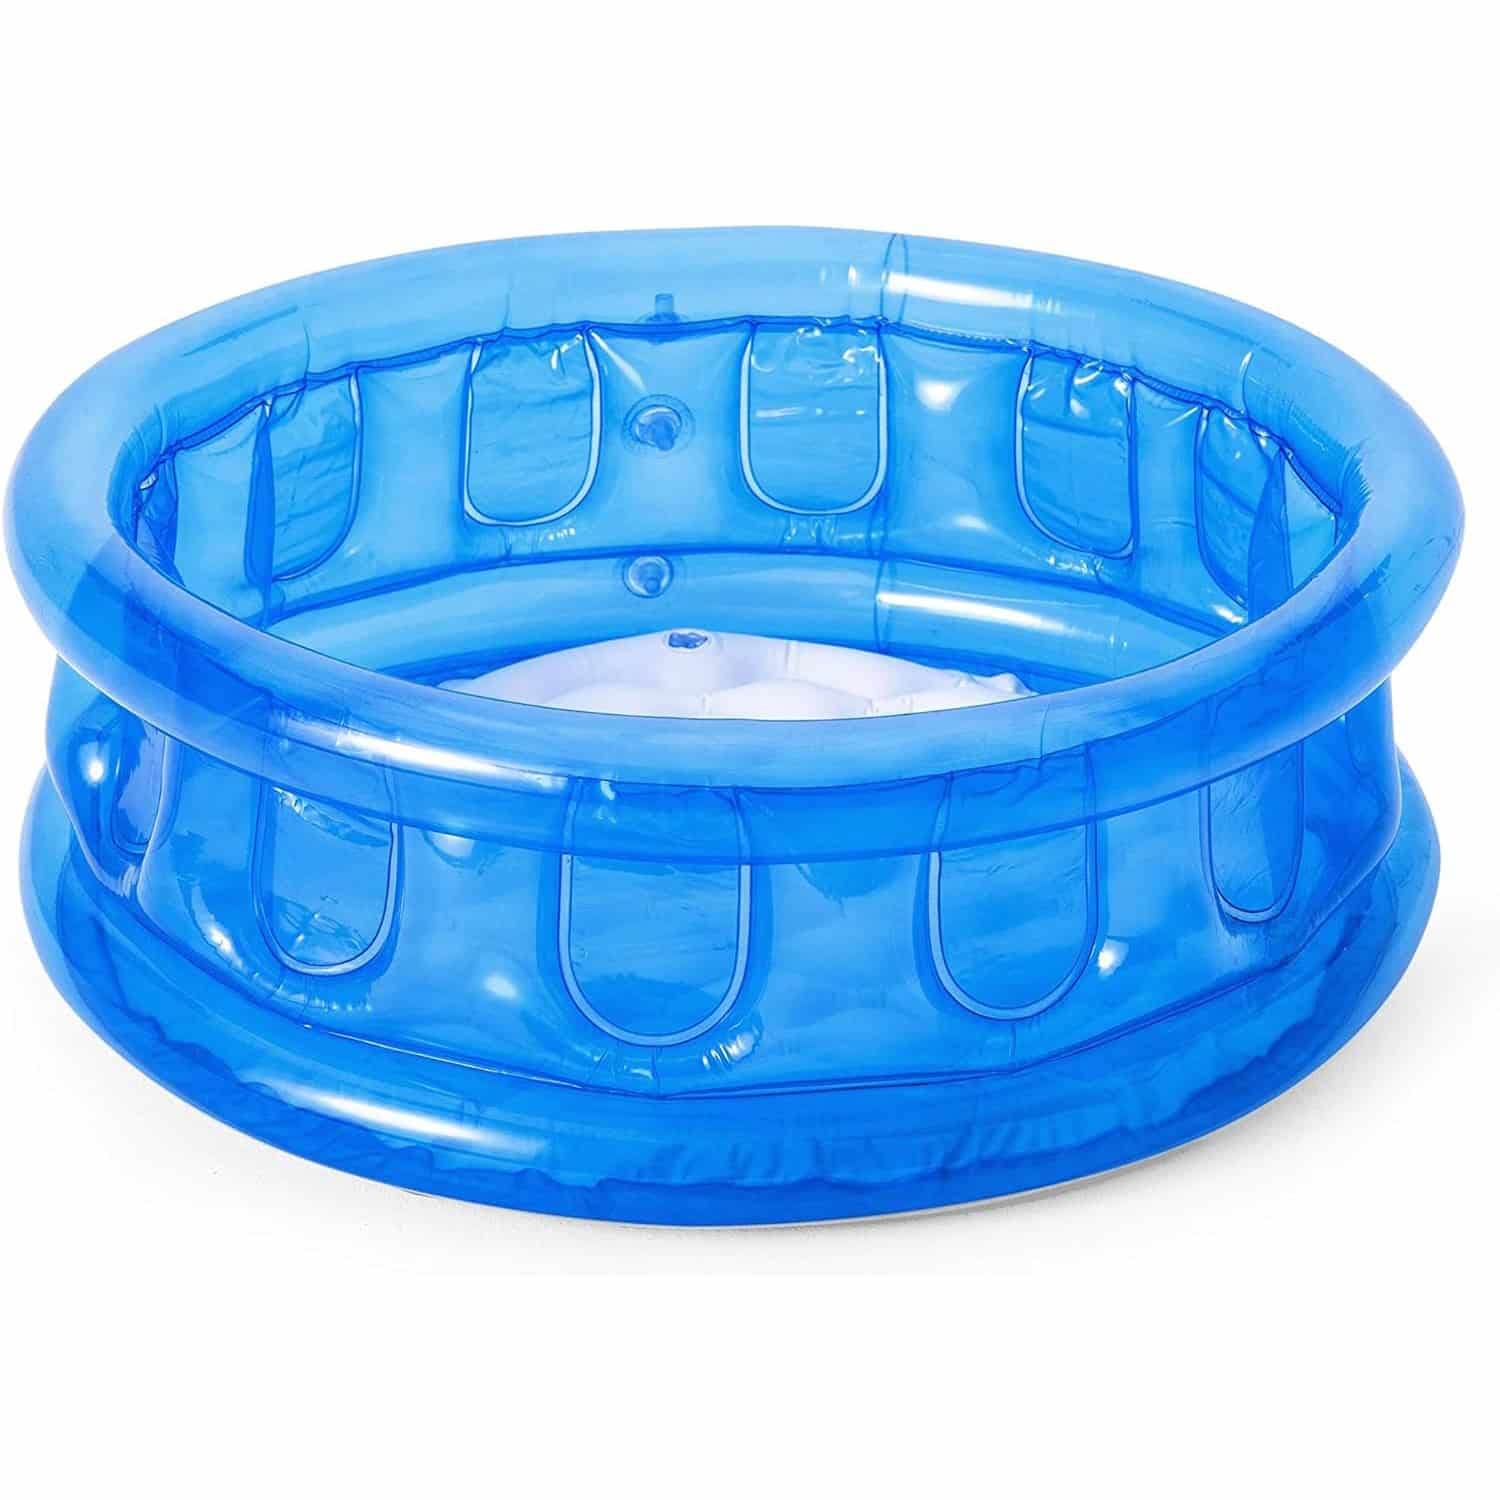 Blue Bestway 64cm (25”) Inflatable Kiddie Pool #51112